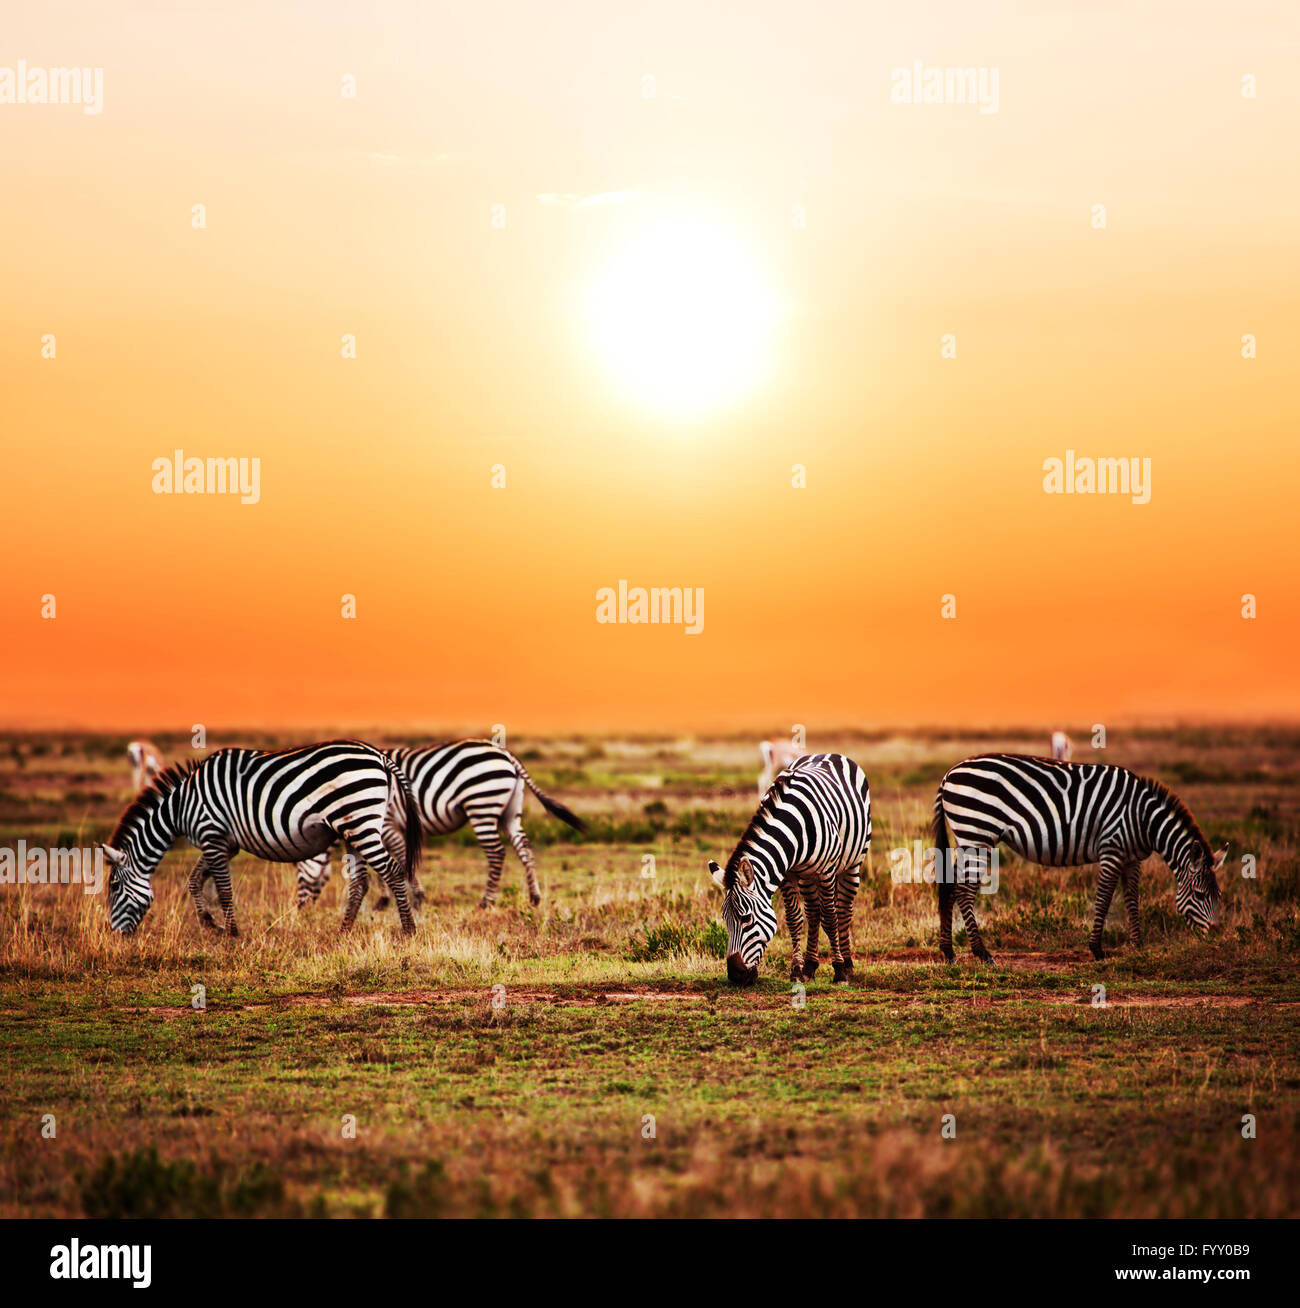 Zebras herd on African savanna at sunset. Stock Photo